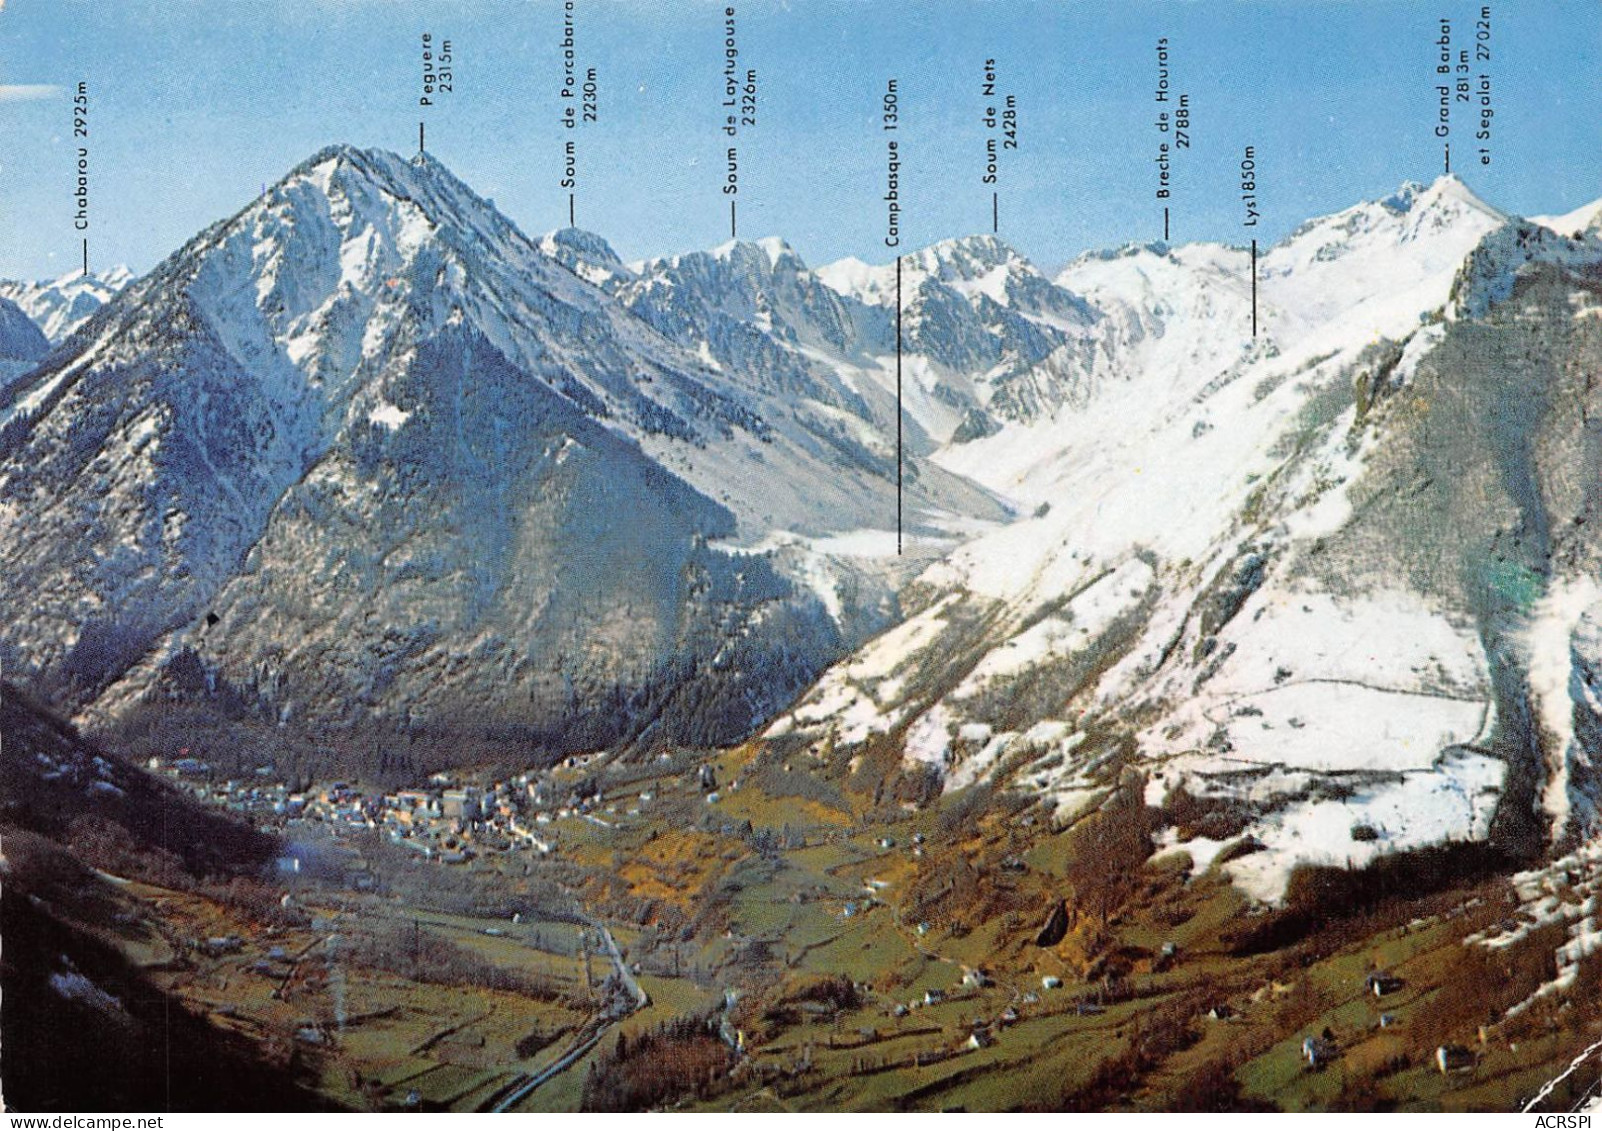 65 CAUTERETS Vue D'ensemble Générale Panoramique Aérienne (Scan R/V) N° 22 \MS9004 - Cauterets